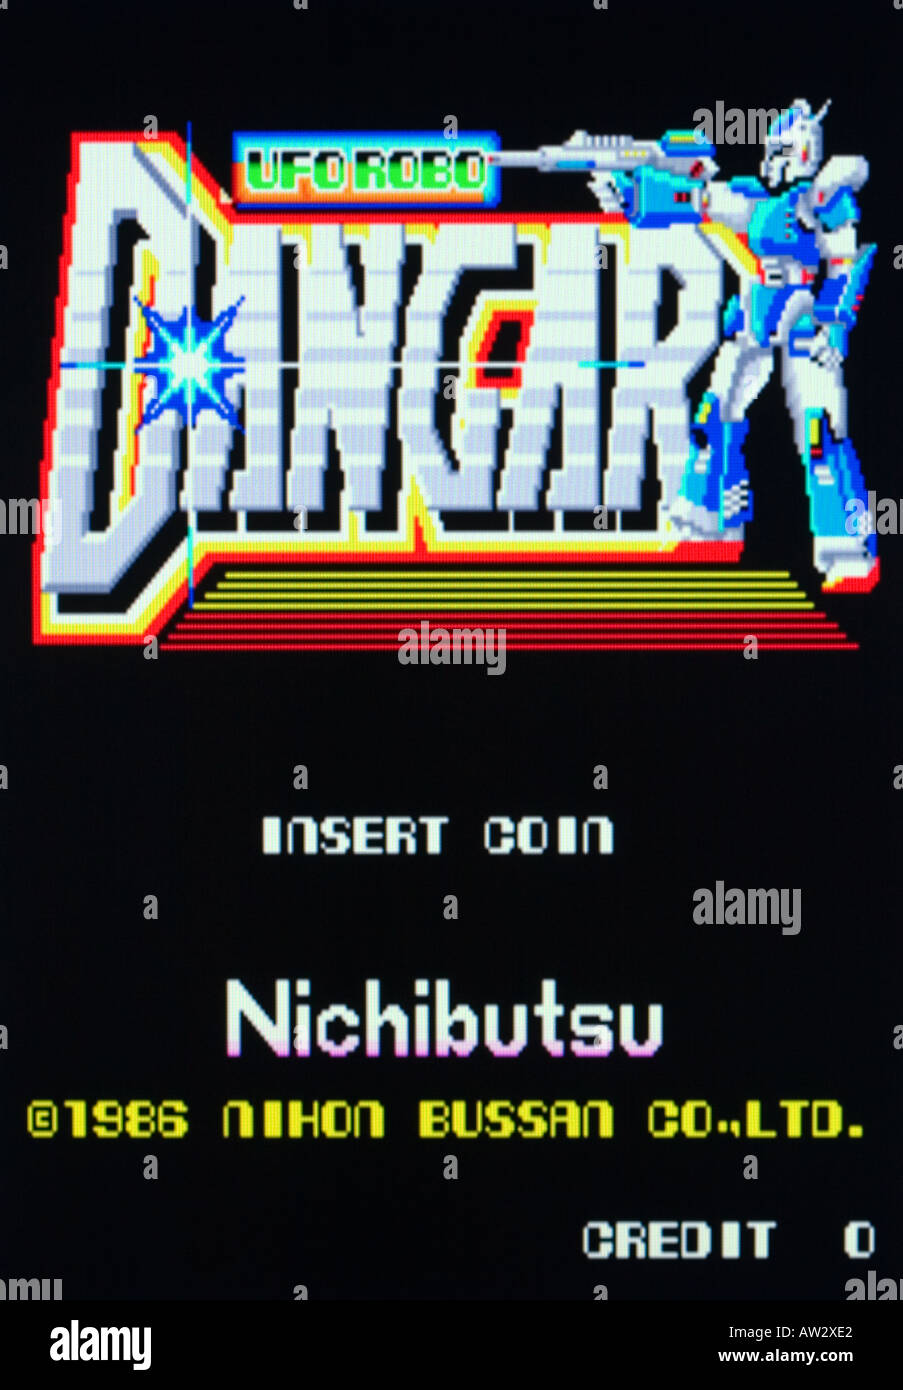 Dangar UFO Robo Nihon Bussan Nichibutsu arcade Vintage 1986 capture d'écran de jeux vidéo - EDITORIAL UTILISEZ UNIQUEMENT Banque D'Images